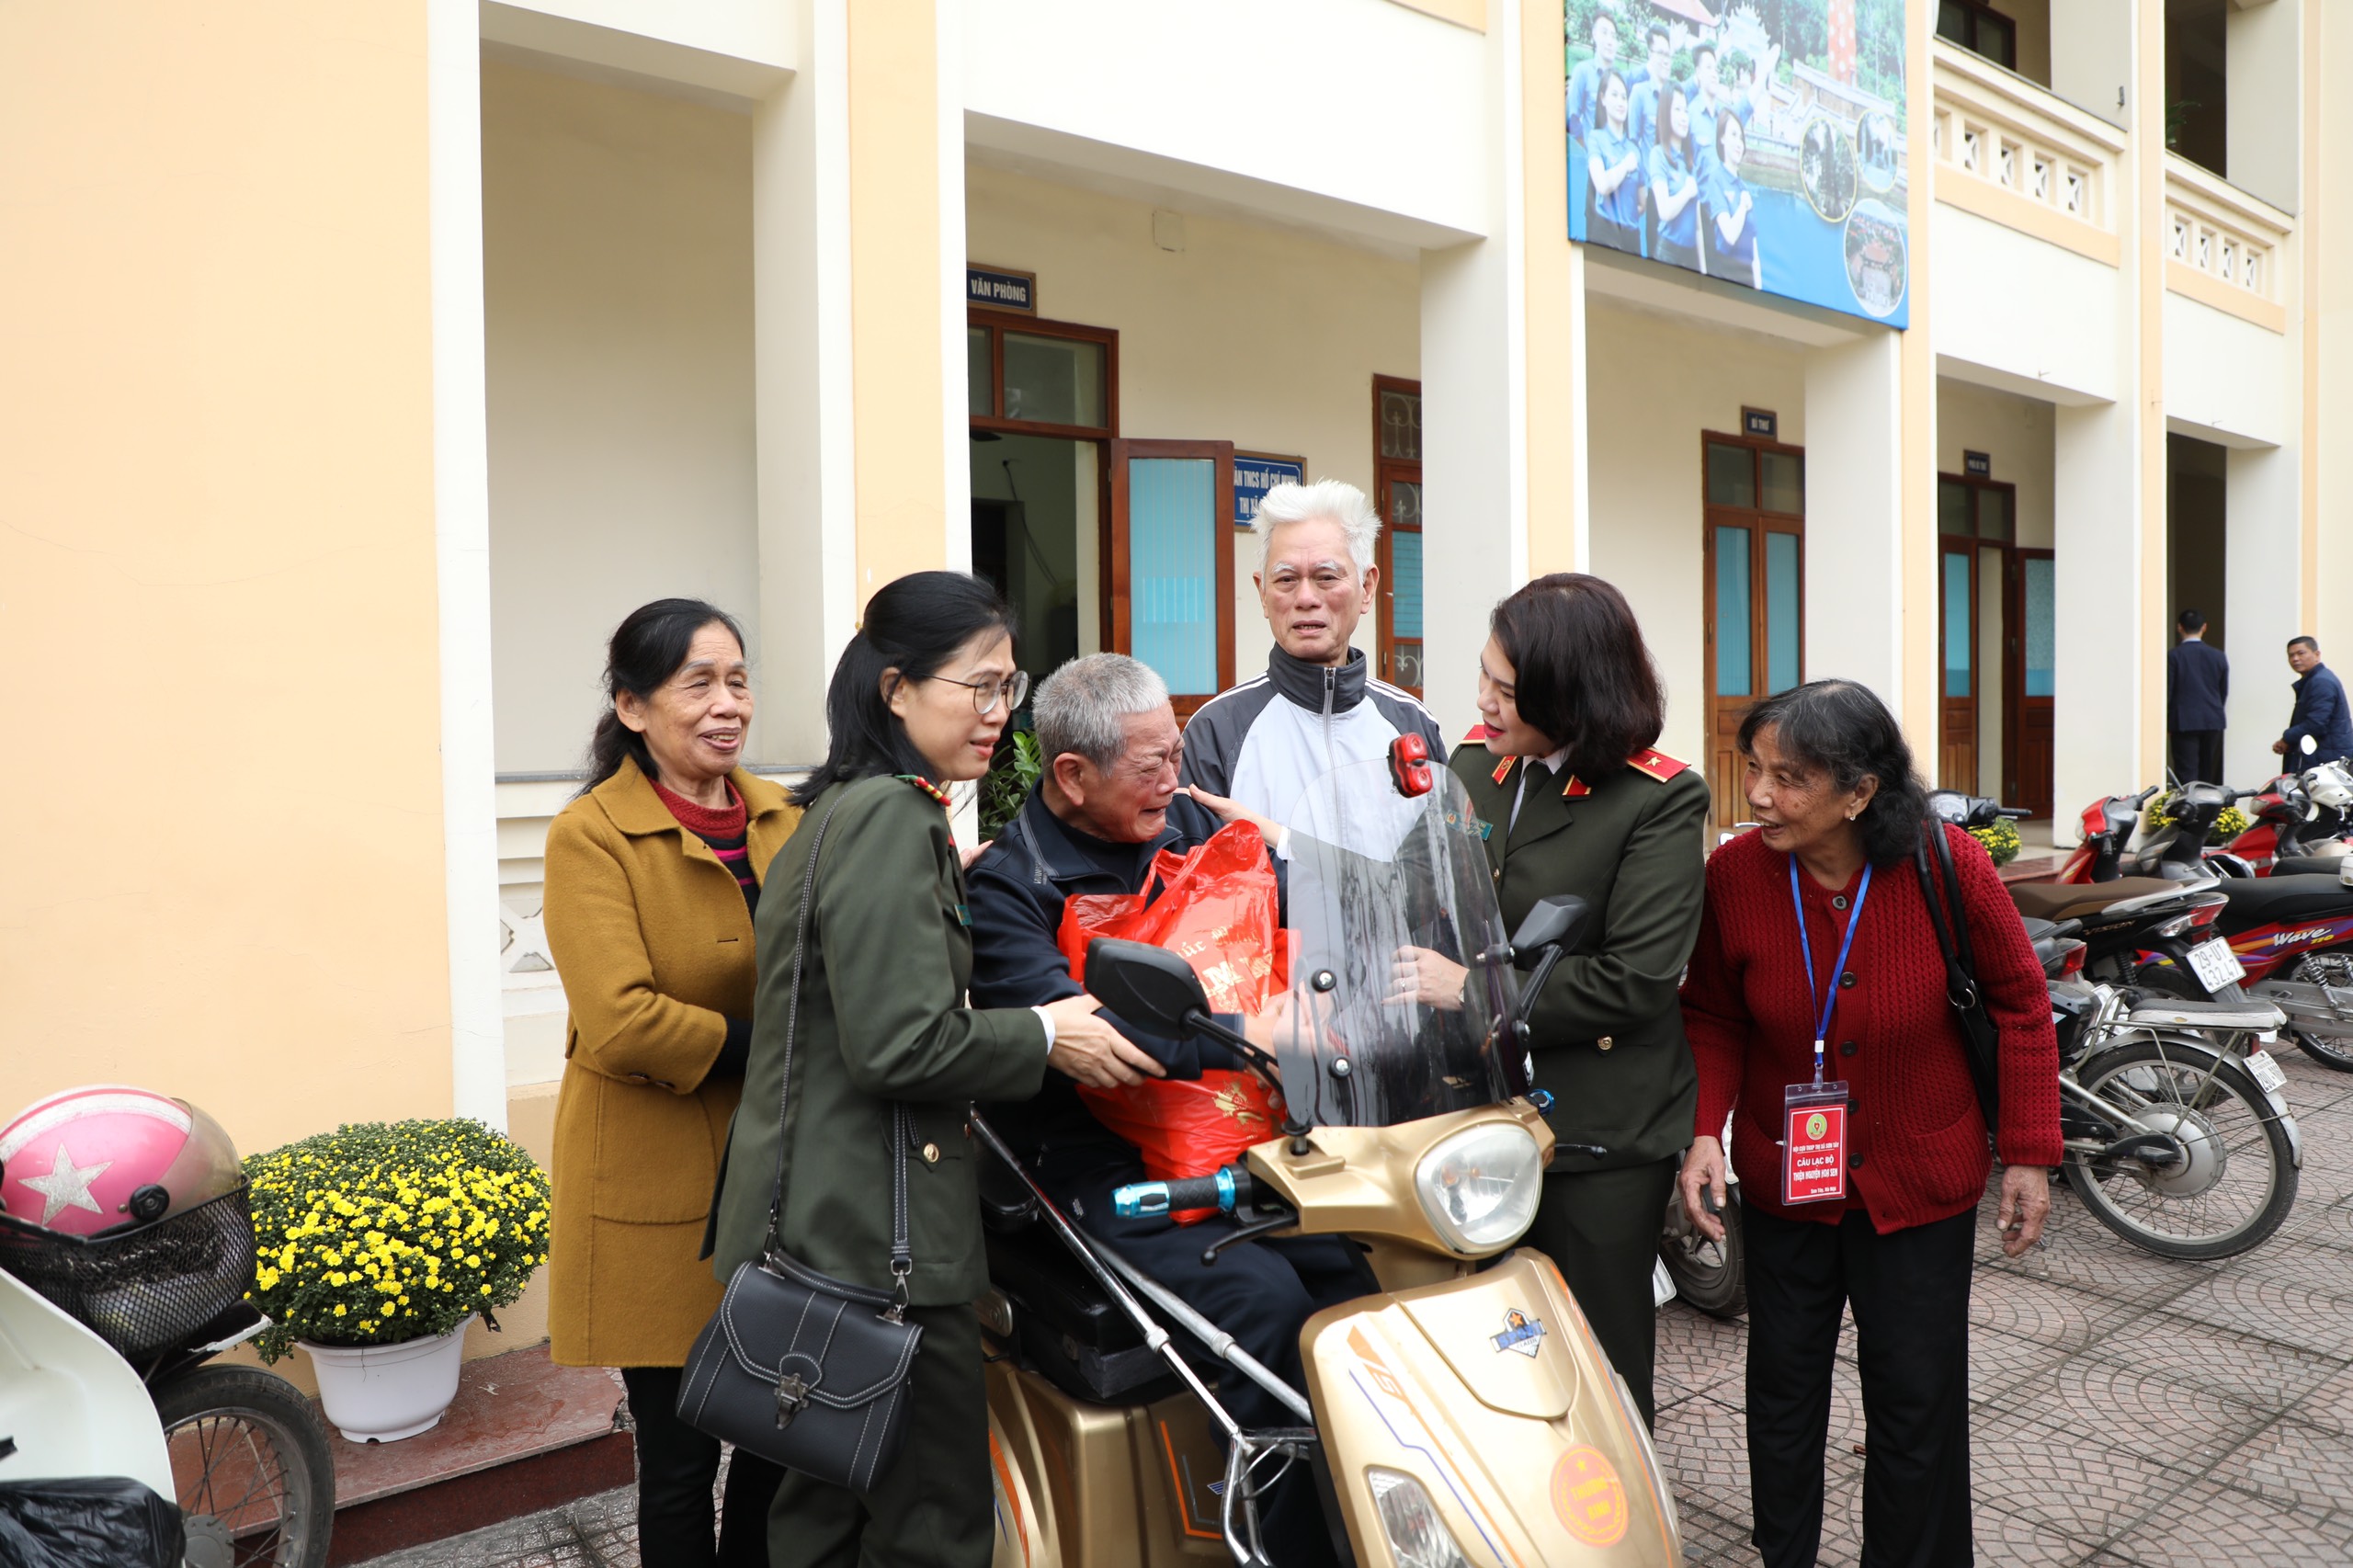 Thiếu tướng Ngô Hoài Thu và đại diện Ban Chấp hành Hội Phụ nữ Cục Đối ngoại trao quà Tết cho các gia đình cựu thanh niên xung phong khó khăn ở thị xã Sơn Tây.